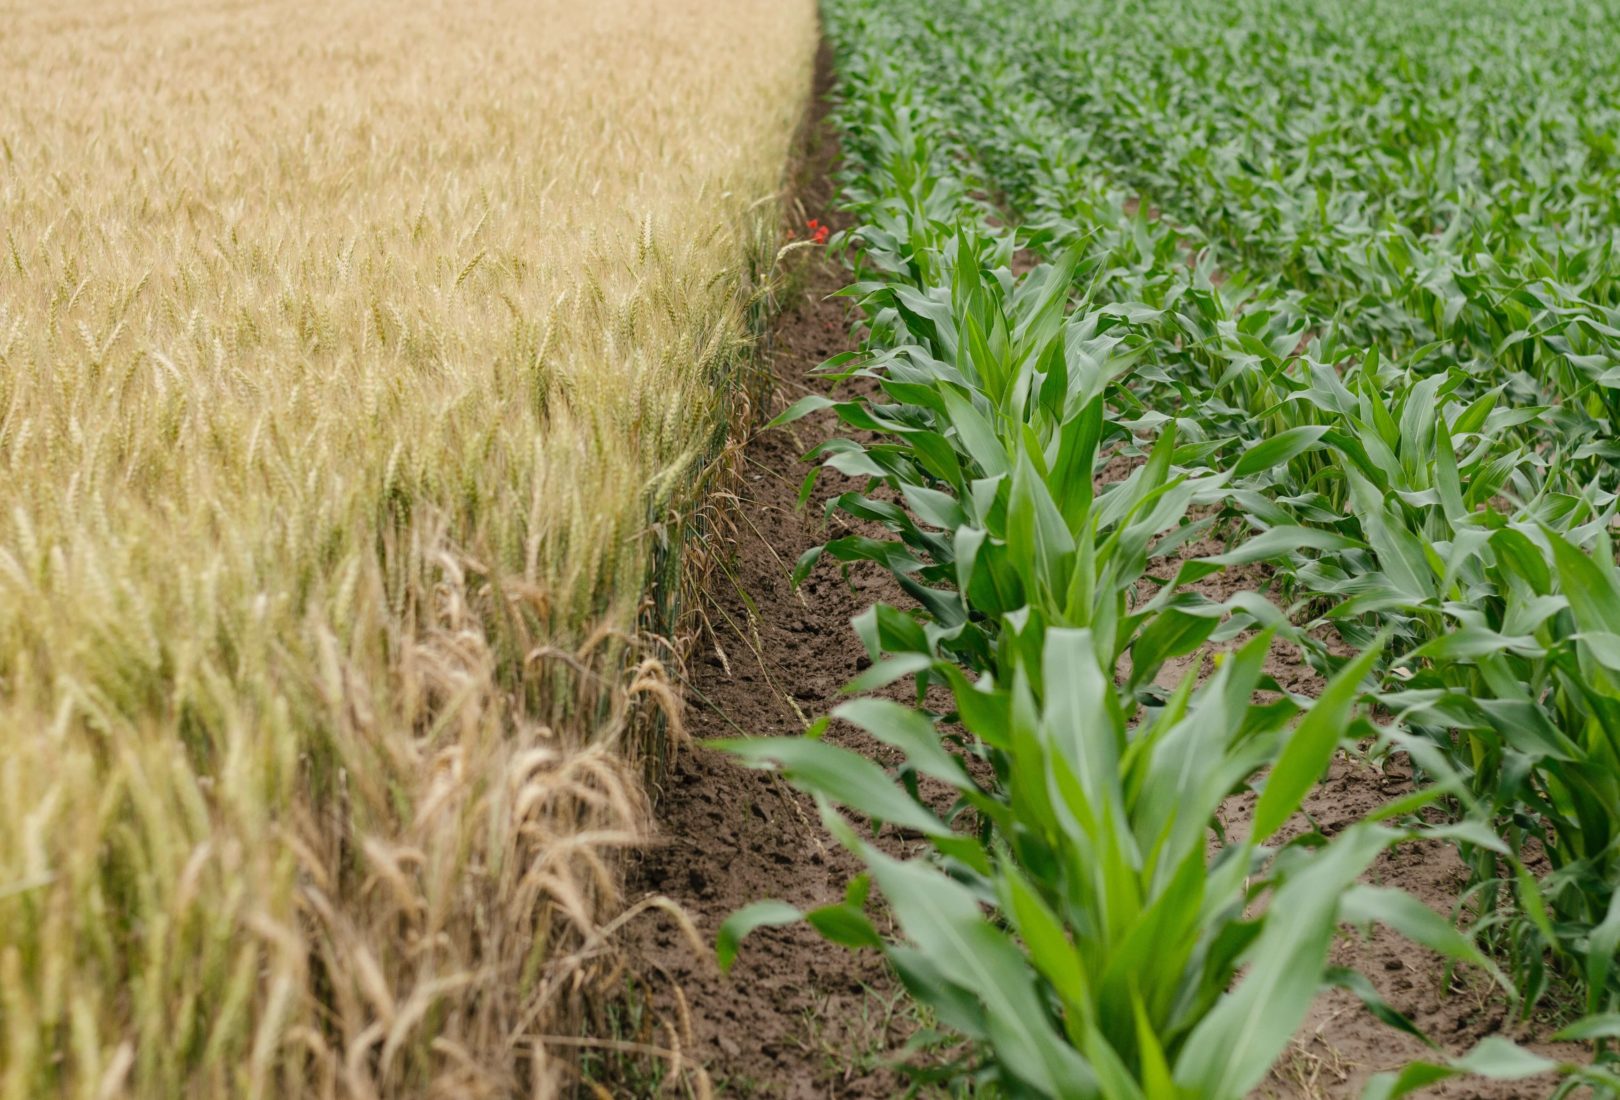 green corn plants in a field